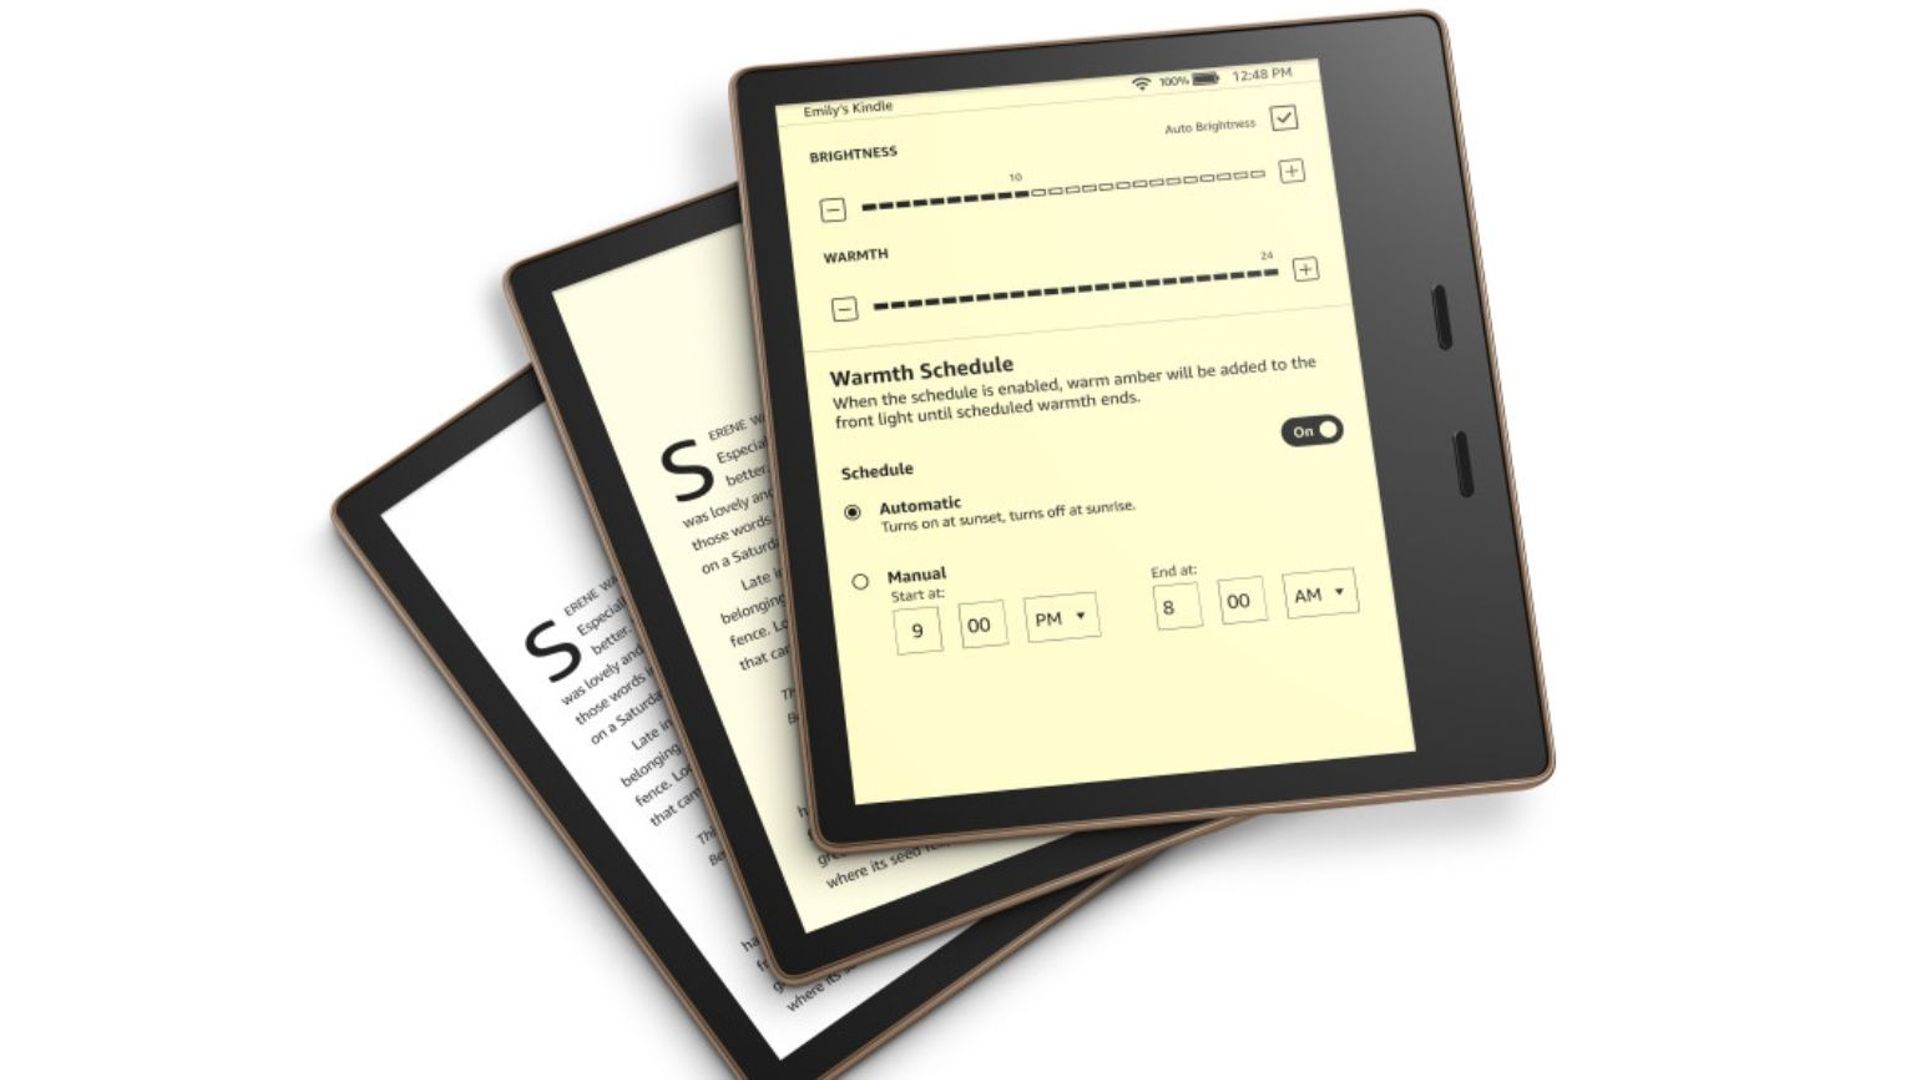 Amazon dévoile un nouveau Kindle, moins agressif pour les yeux